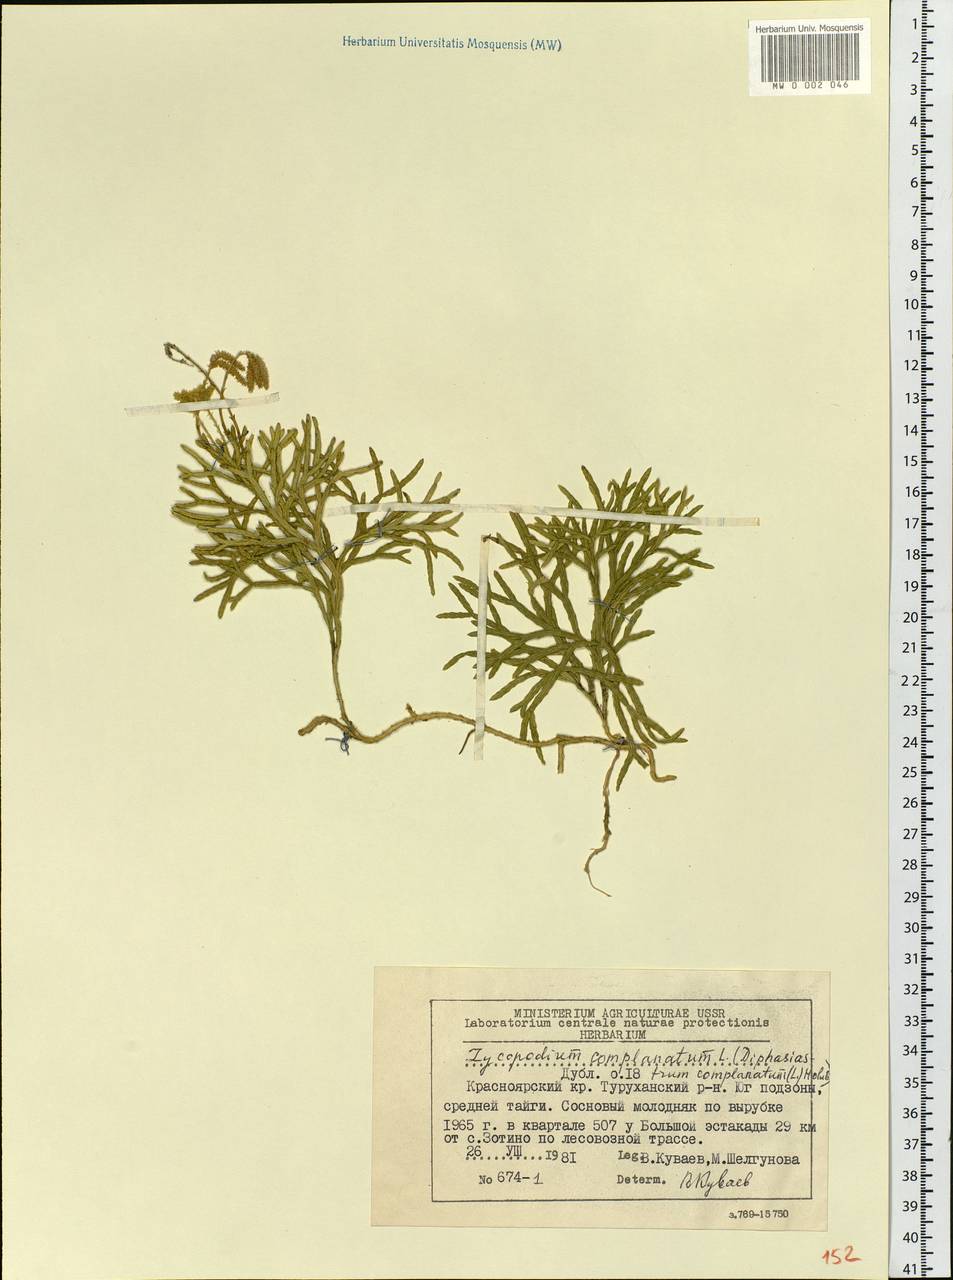 Diphasiastrum complanatum (L.) Holub, Siberia, Central Siberia (S3) (Russia)